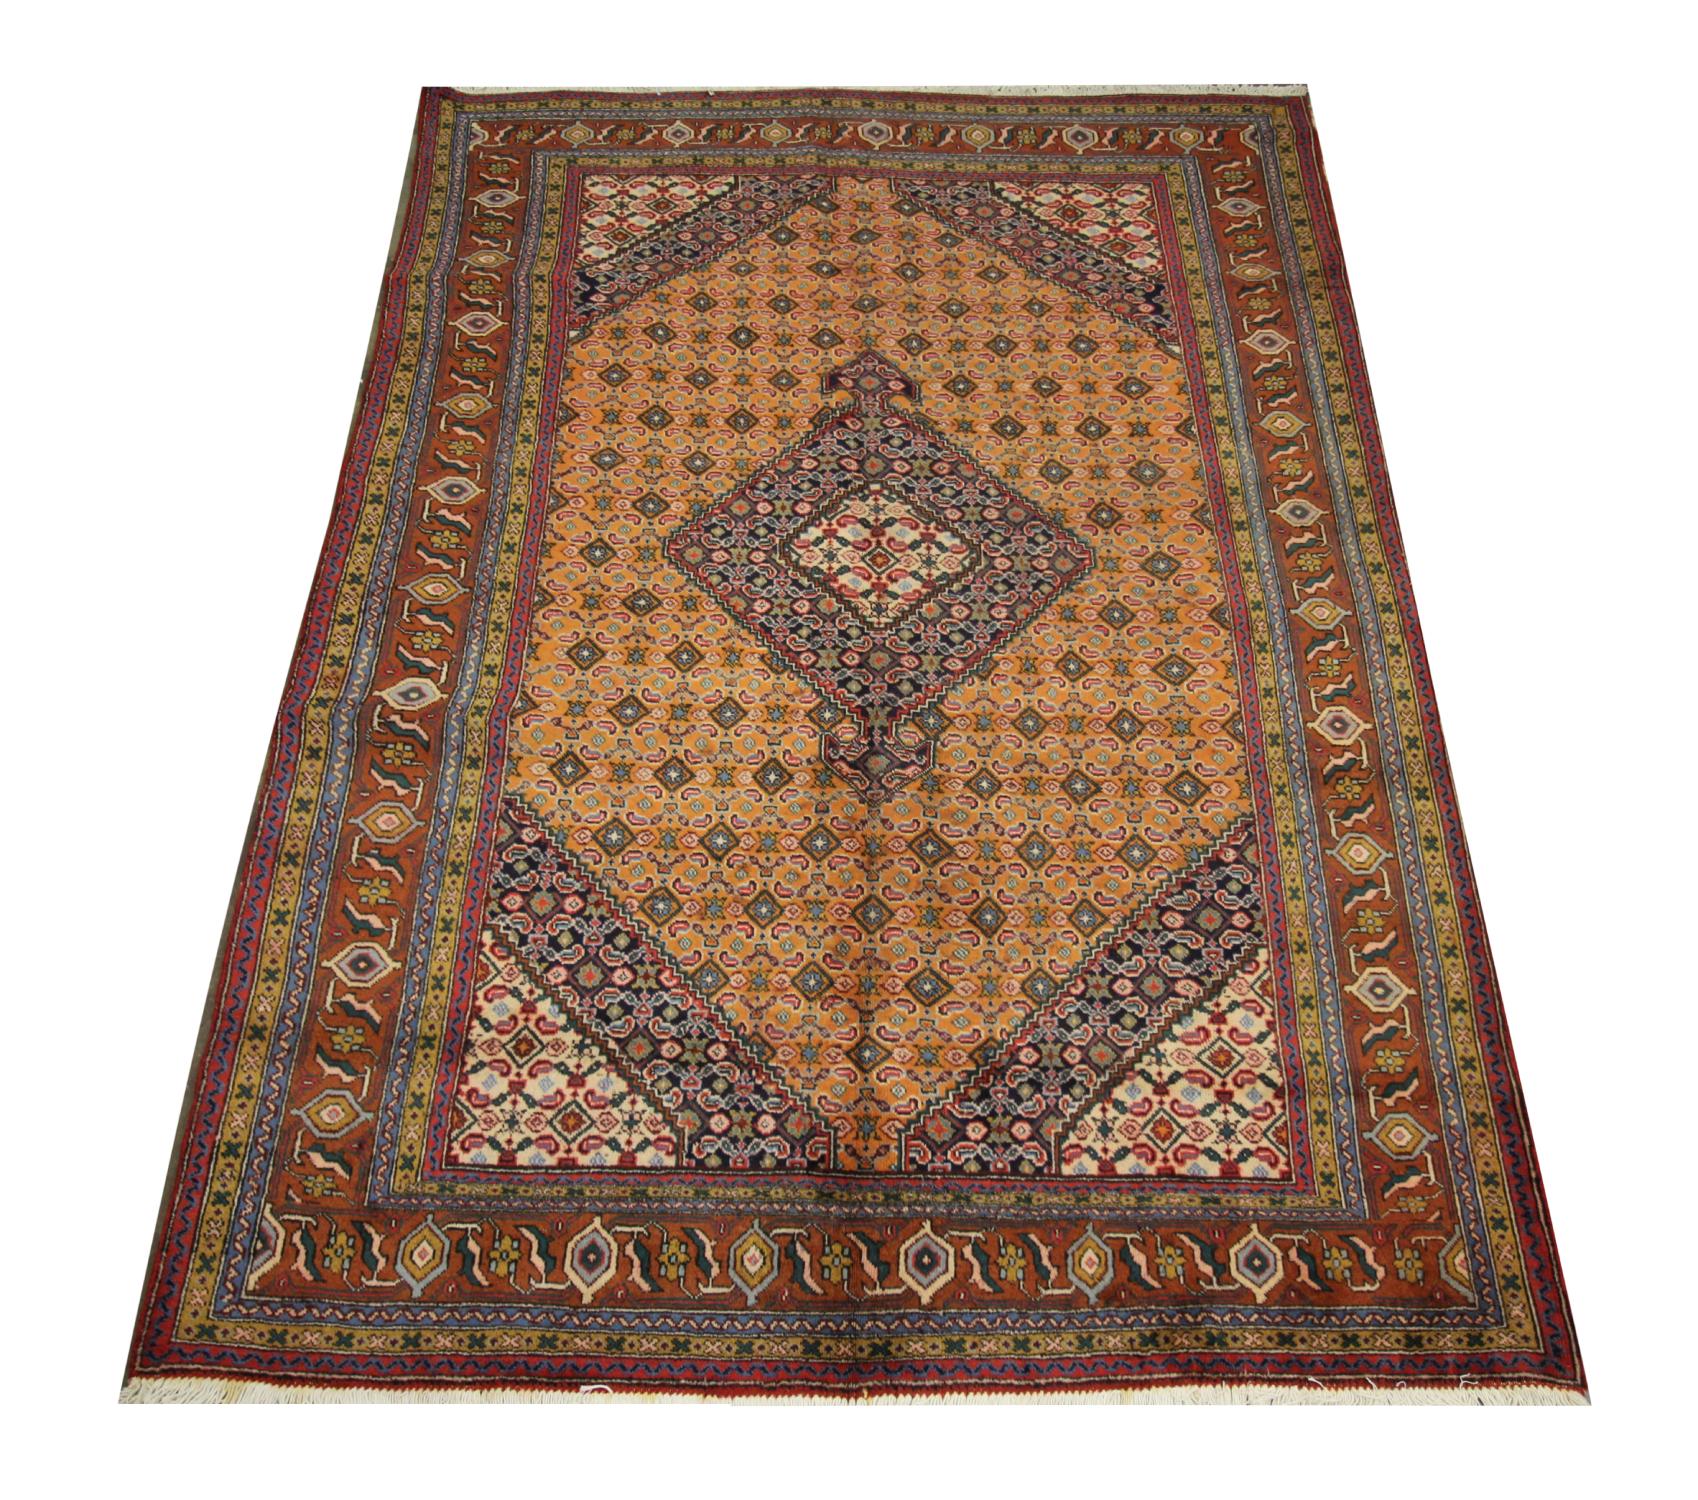 Ce tapis vintage en laine est un fin tapis turc tissé avec un motif symétrique. Le fond est or rouille et les accents bleus, crème, bruns et rouges composent les médaillons et les motifs géométriques complexes. Le caractère distinctif et la riche